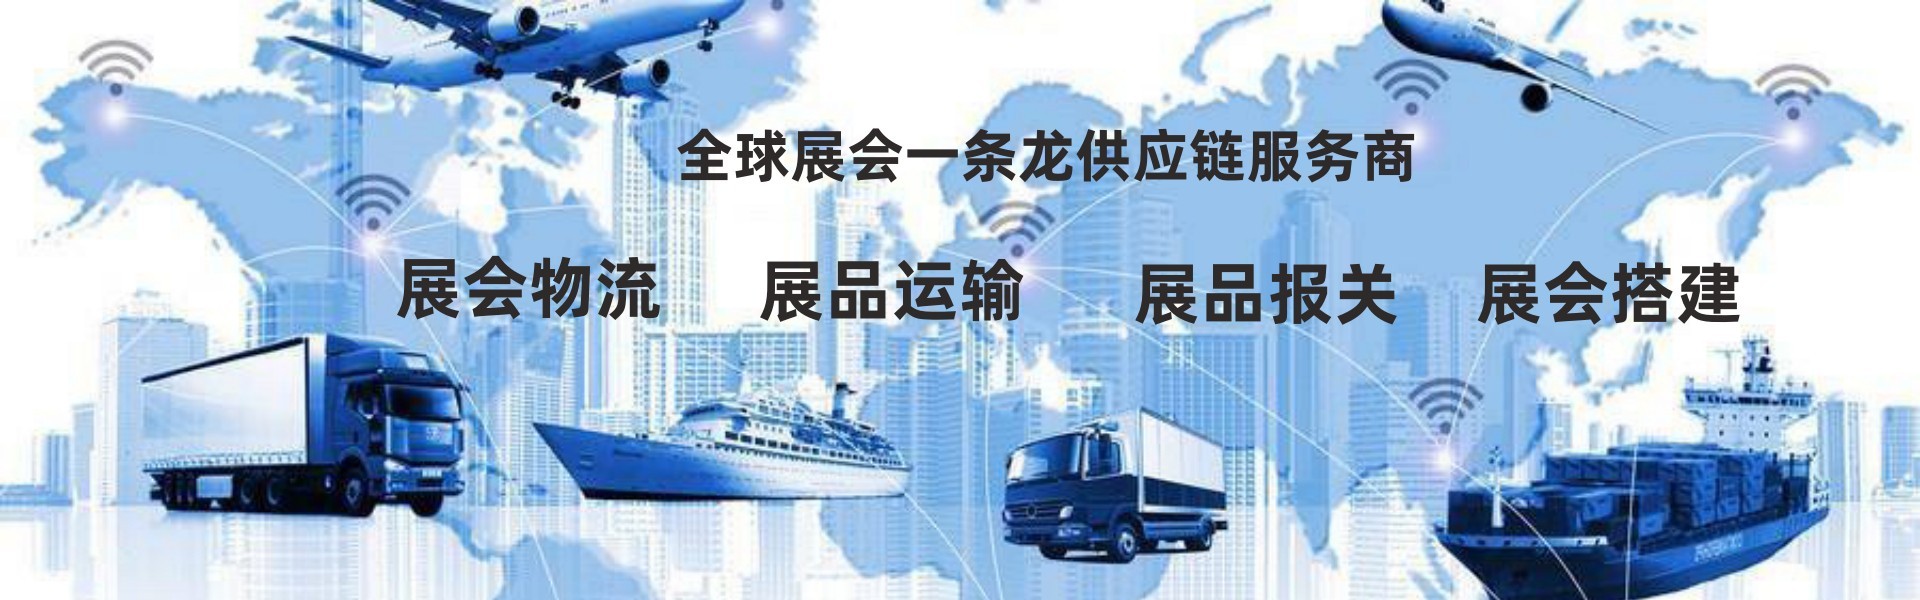 上海展顺发供应链科技有限公司